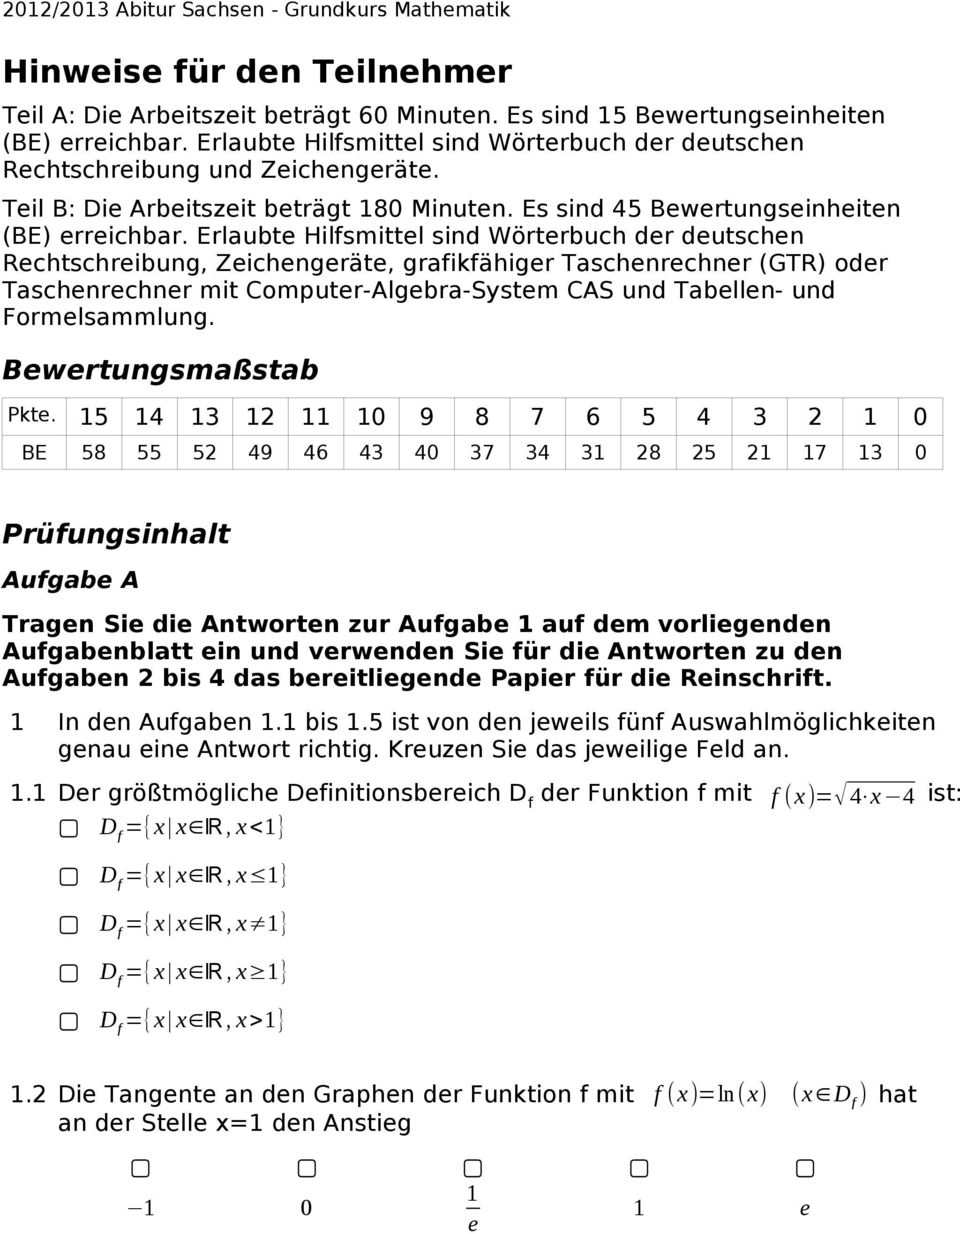 Erlaubte Hilfsmittel sind Wörterbuch der deutschen Rechtschreibung, Zeichengeräte, grafikfähiger Taschenrechner (GTR) oder Taschenrechner mit Computer-Algebra-System CAS und Tabellen- und